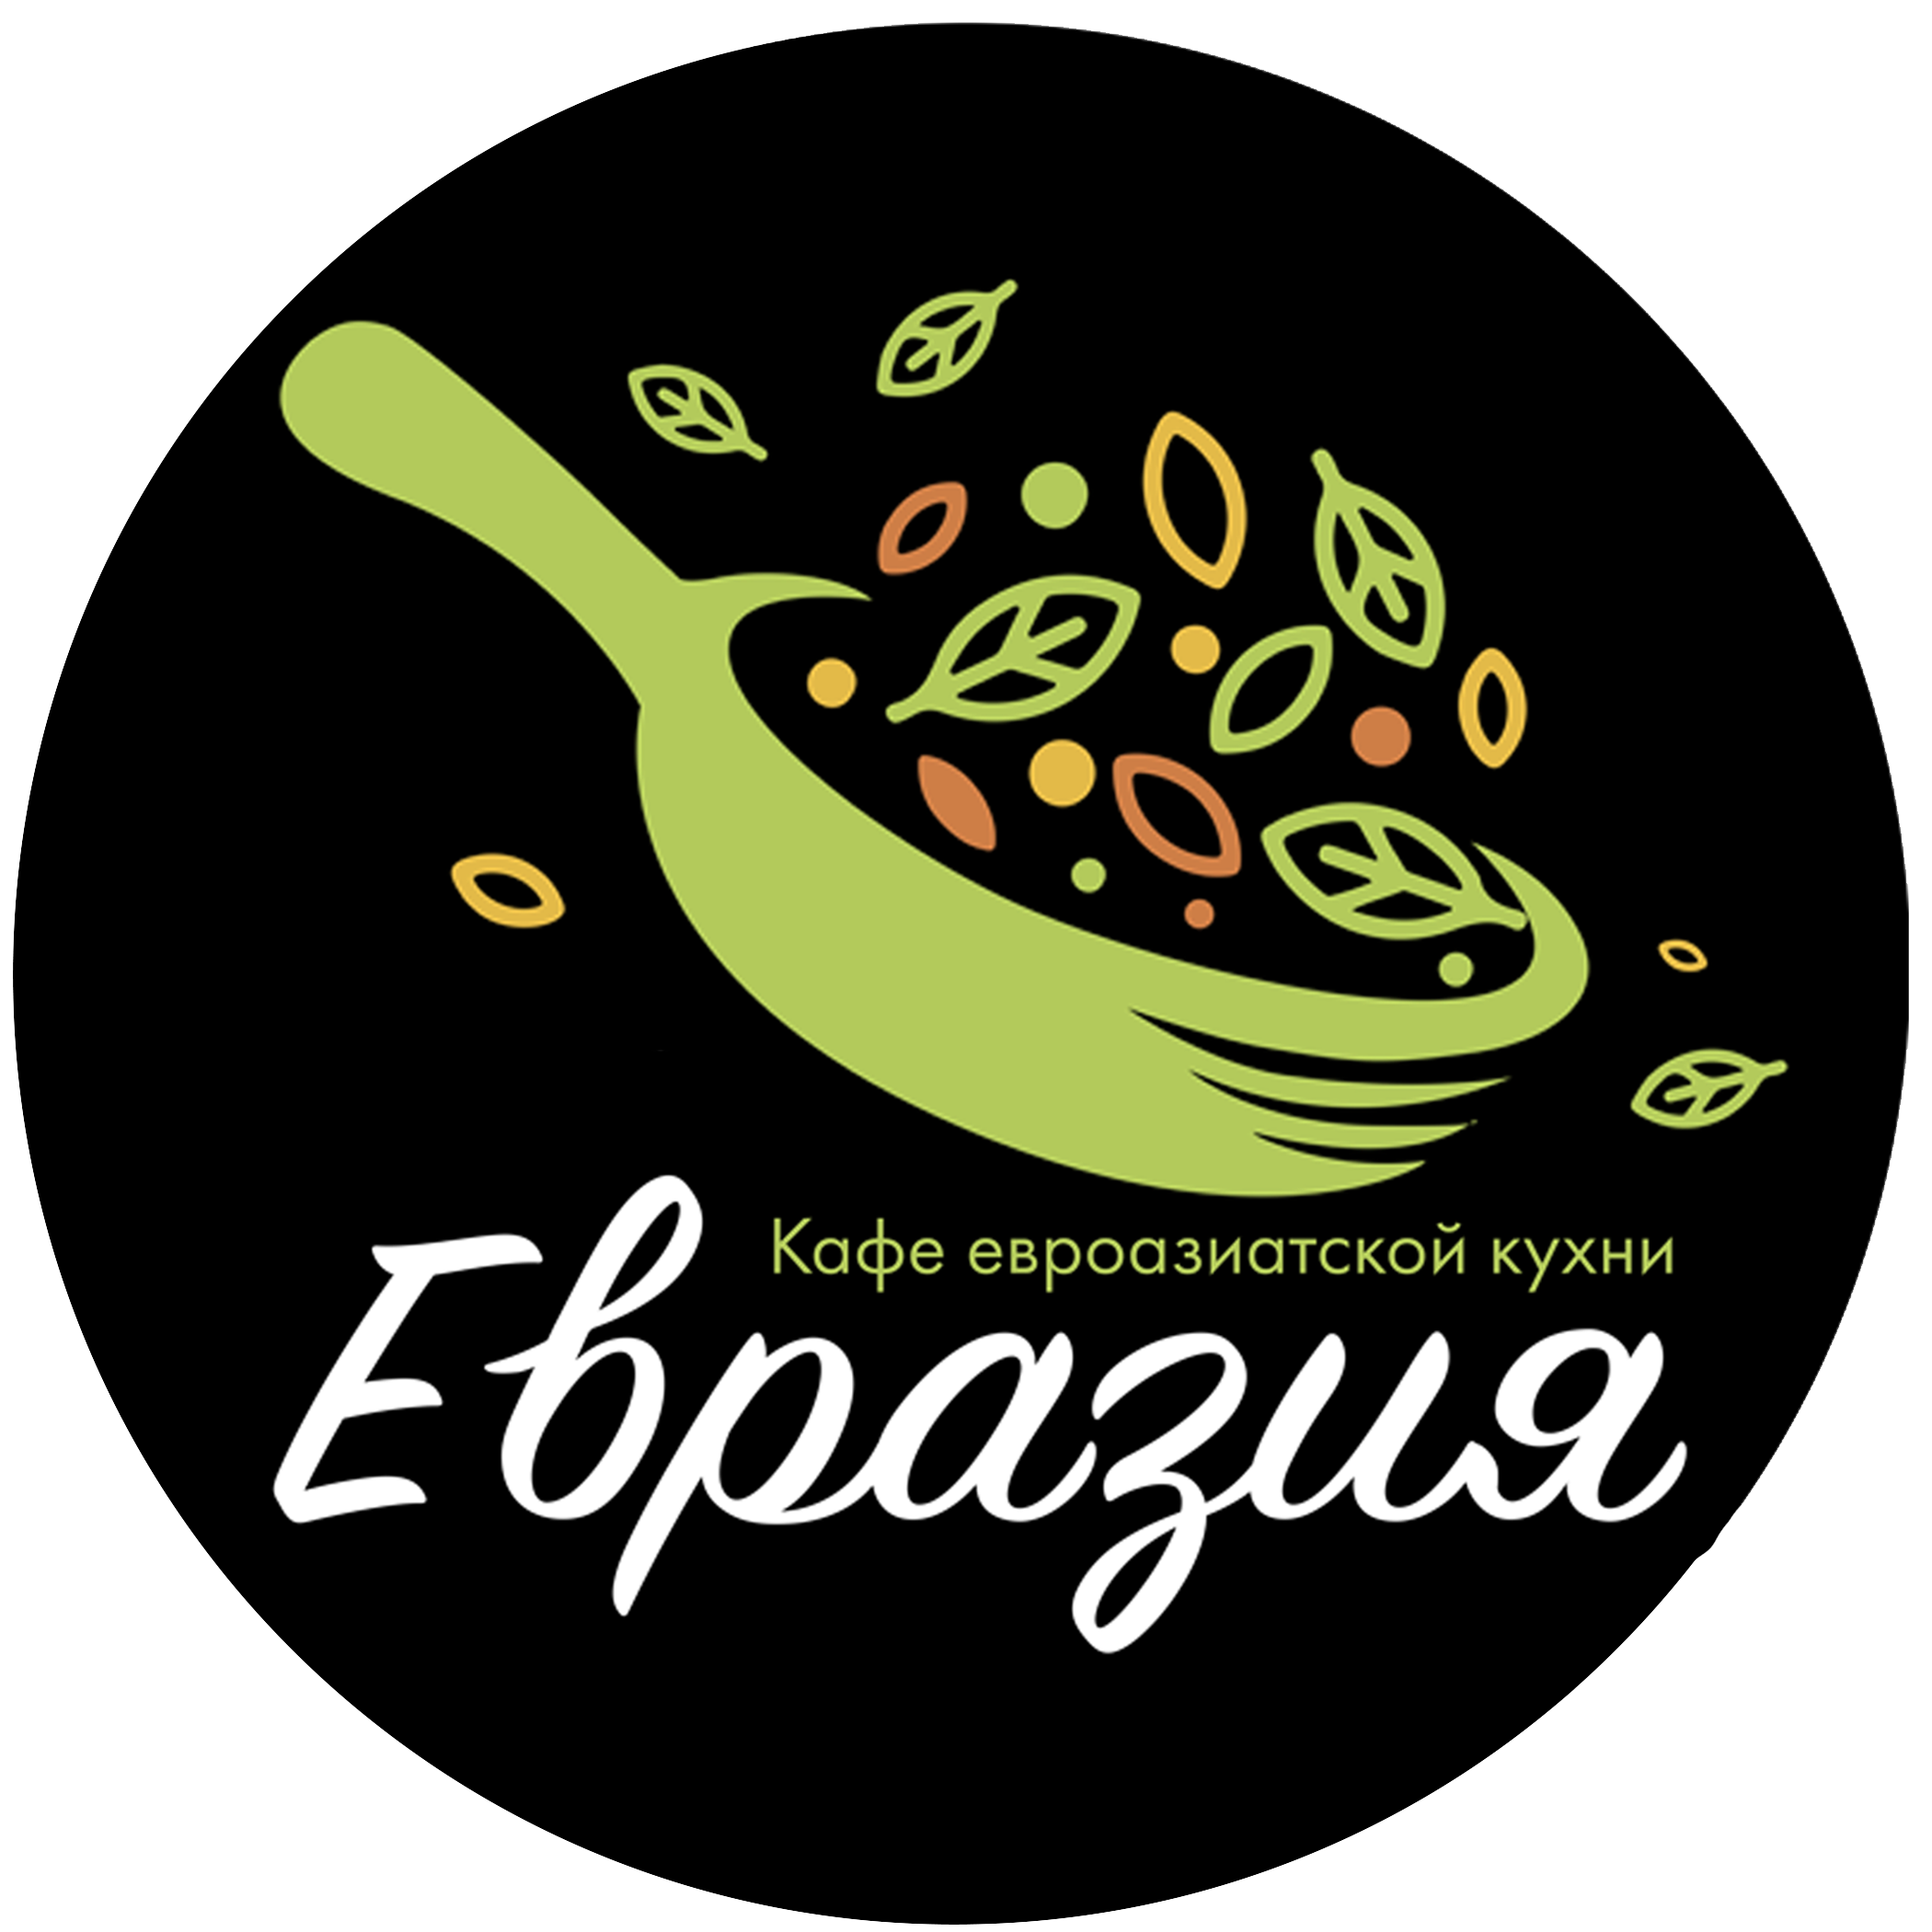 Евразия бизнес ланч. Евразия ресторан Благовещенск. Кафе Евразия логотип. Логотип кафе азиатской кухни. Евразия ресторан лого.